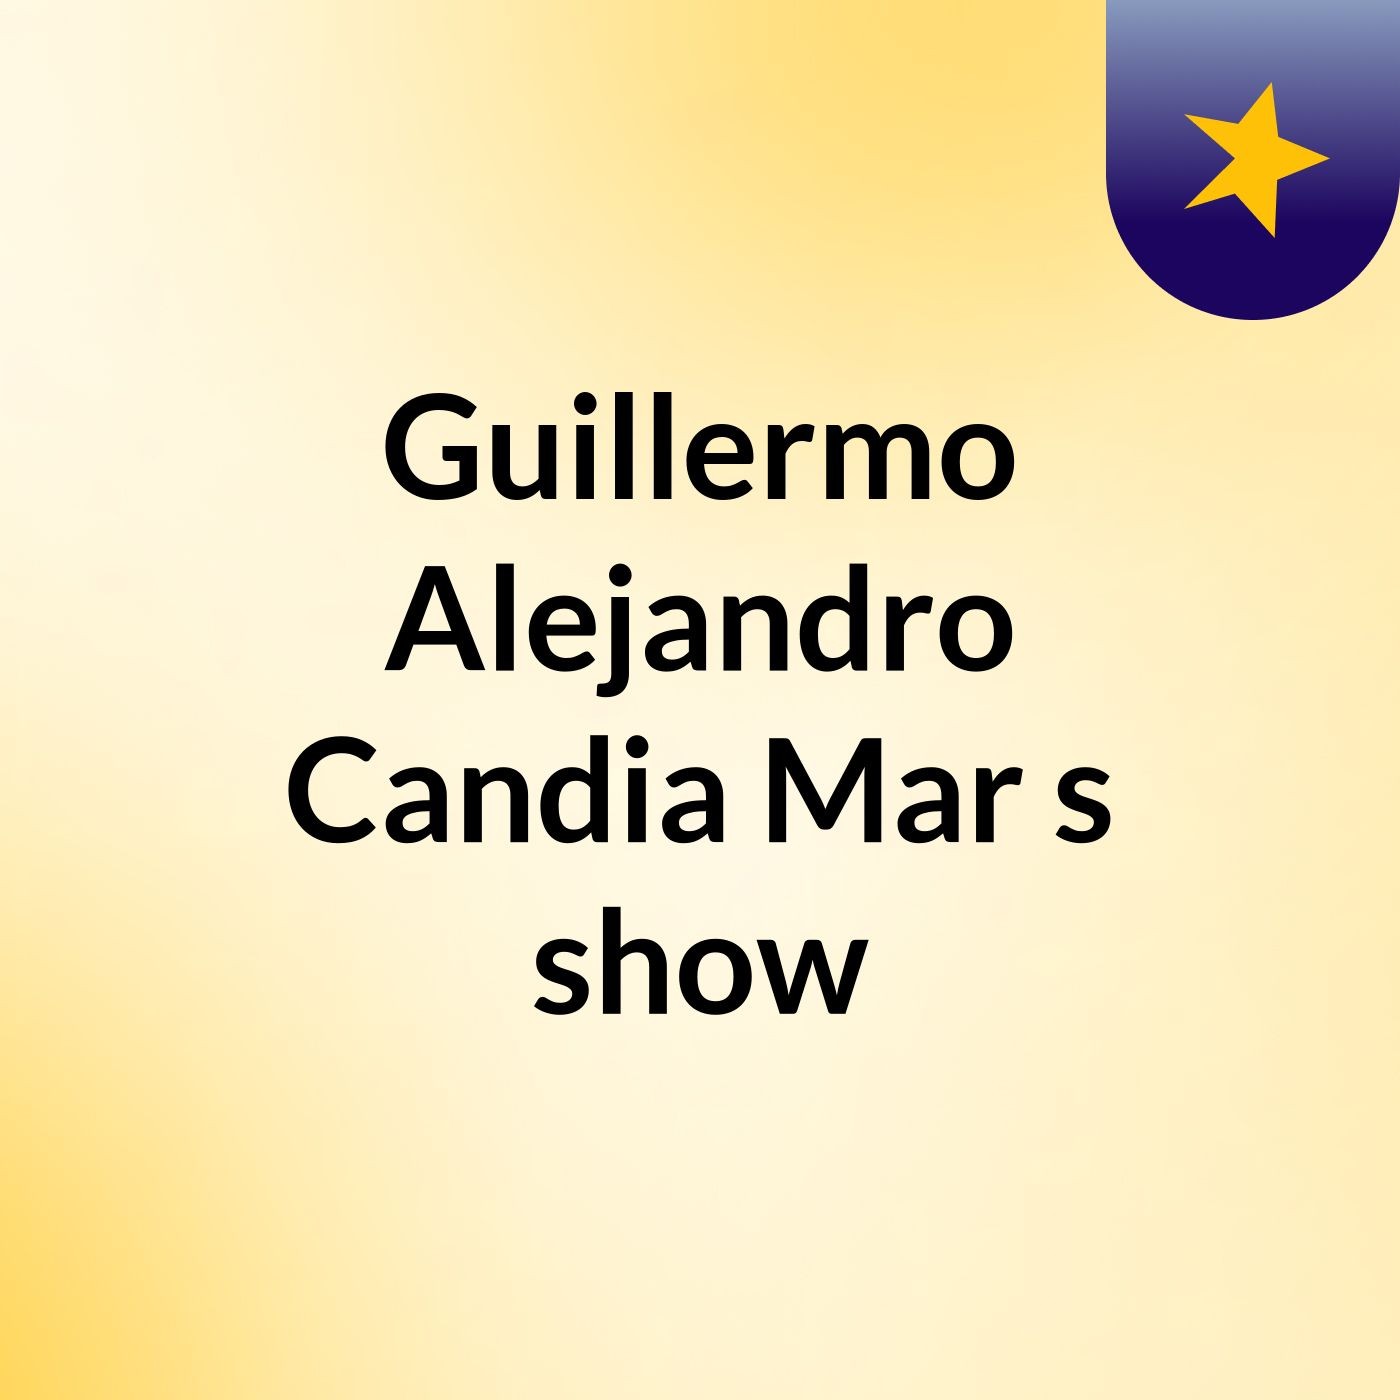 Guillermo Alejandro Candia Mar's show